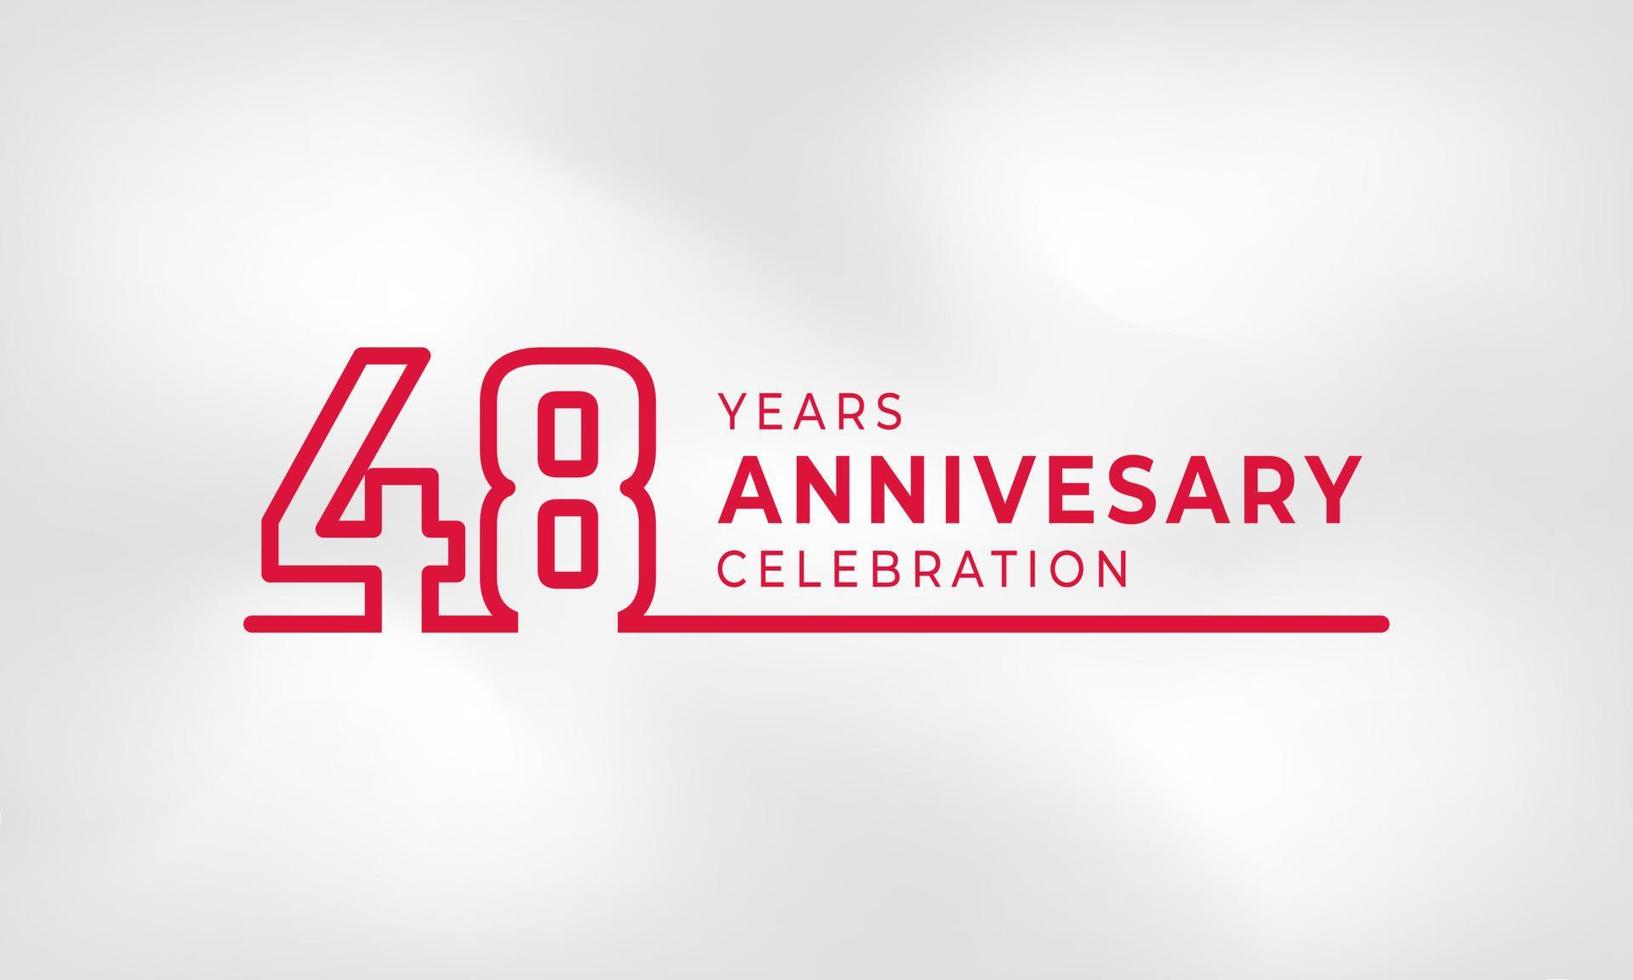 Célébration de l'anniversaire de 48 ans numéro de contour du logotype lié couleur rouge pour l'événement de célébration, le mariage, la carte de voeux et l'invitation isolés sur fond de texture blanche vecteur